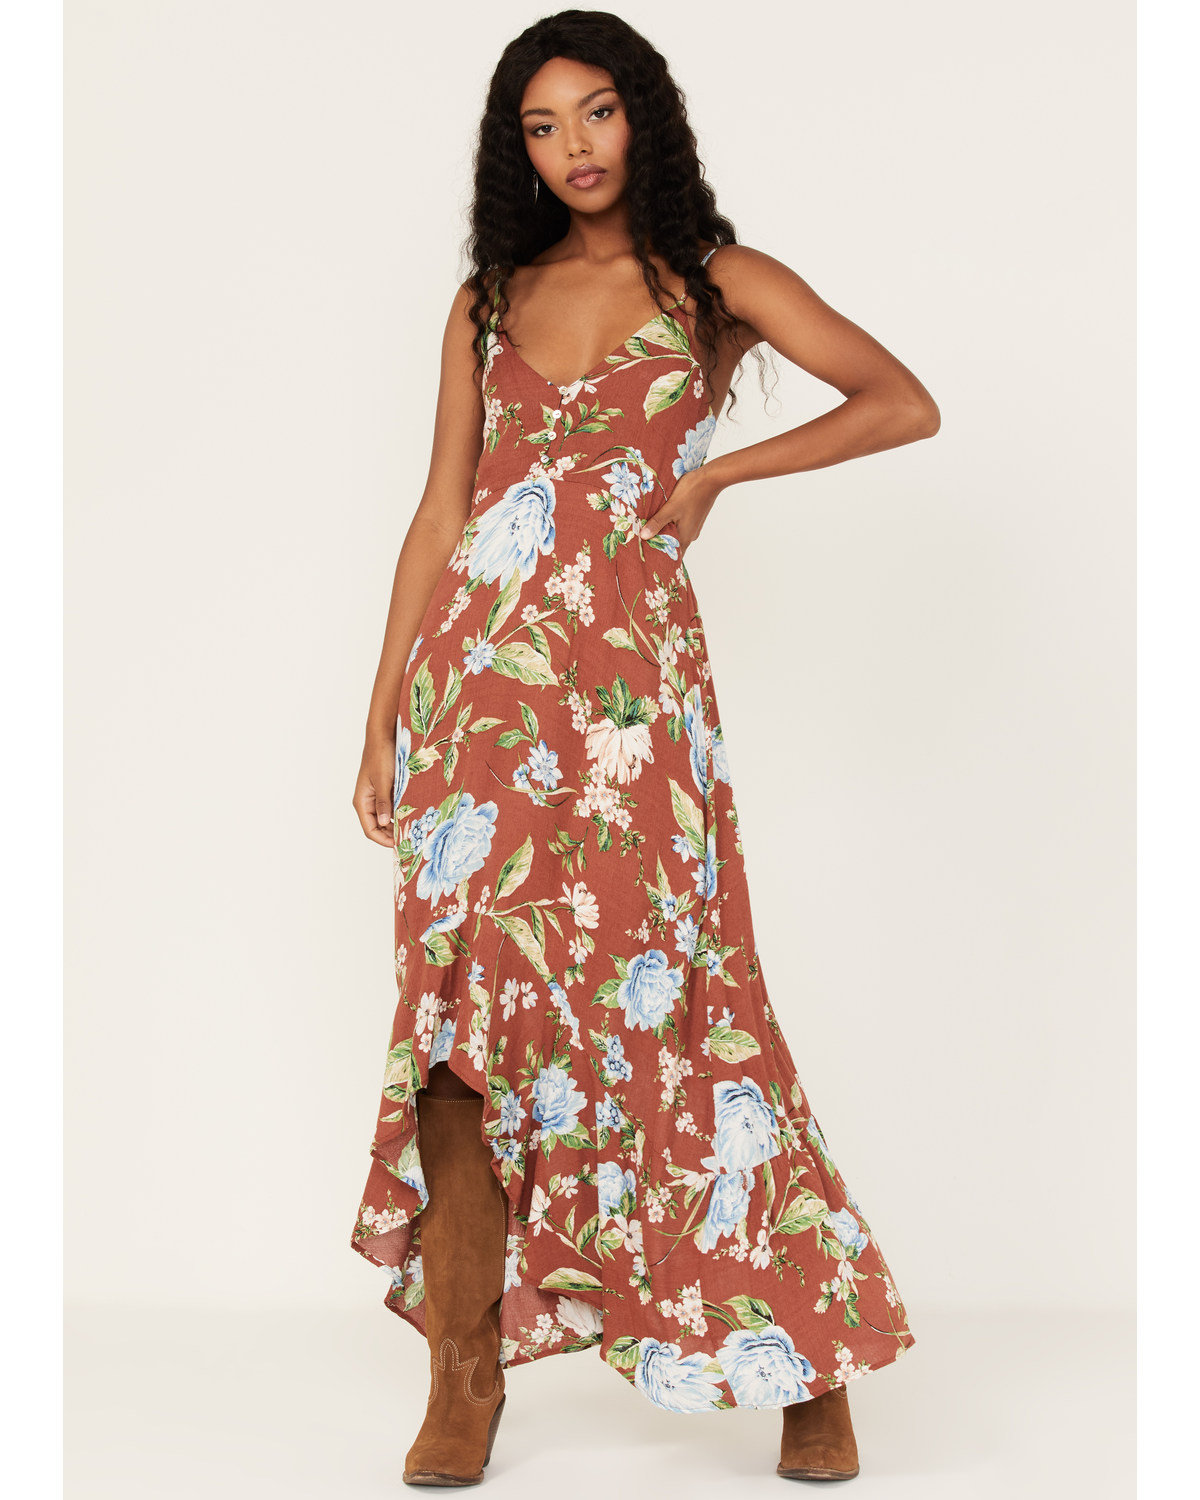 Wild Moss Women's Floral Print Sleeveless Maxi Dress